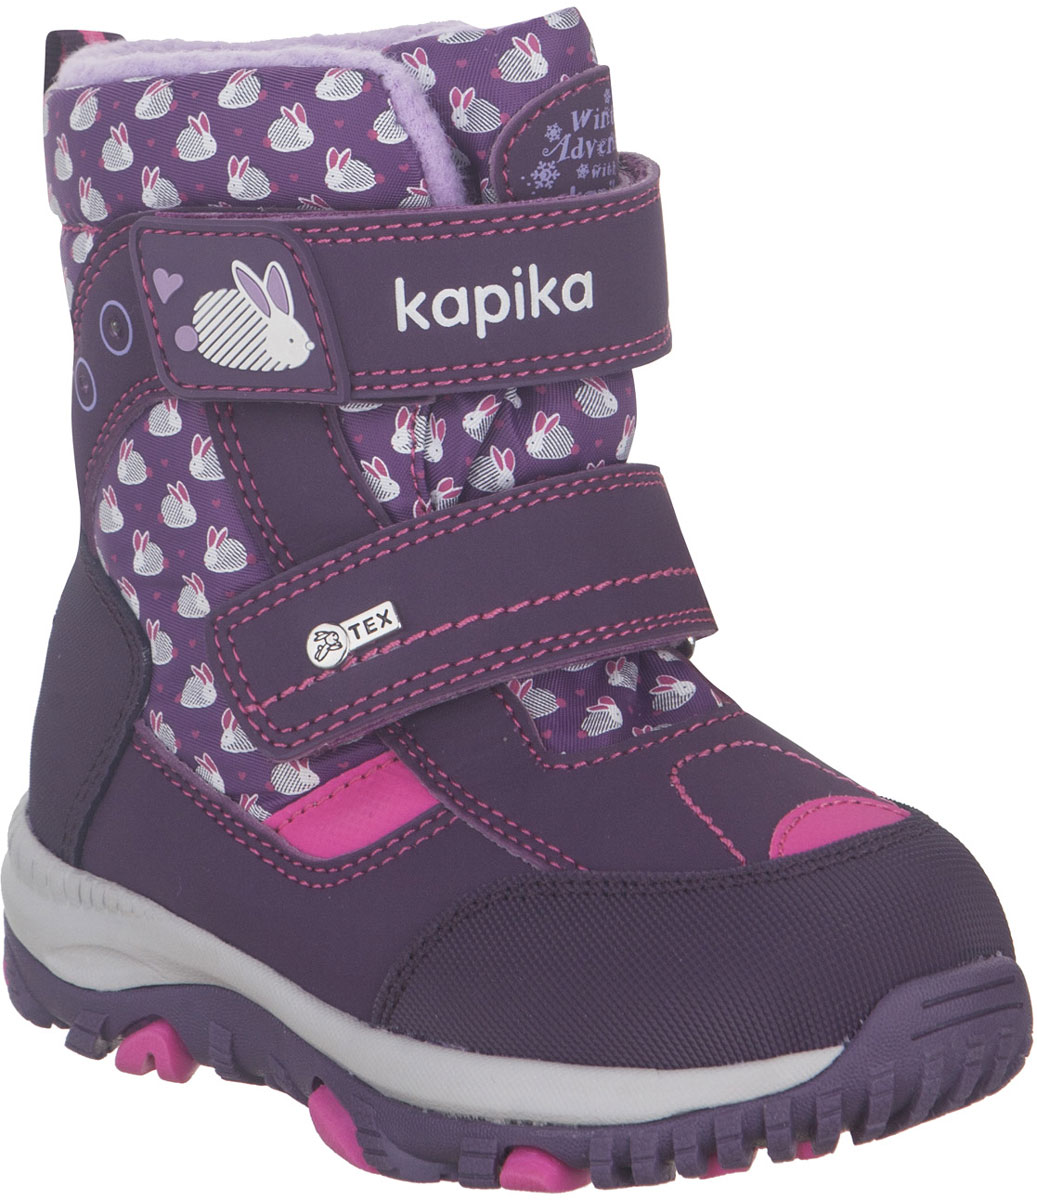 Ботинки для девочки Kapika, цвет: фиолетовый. 41225-2. Размер 24